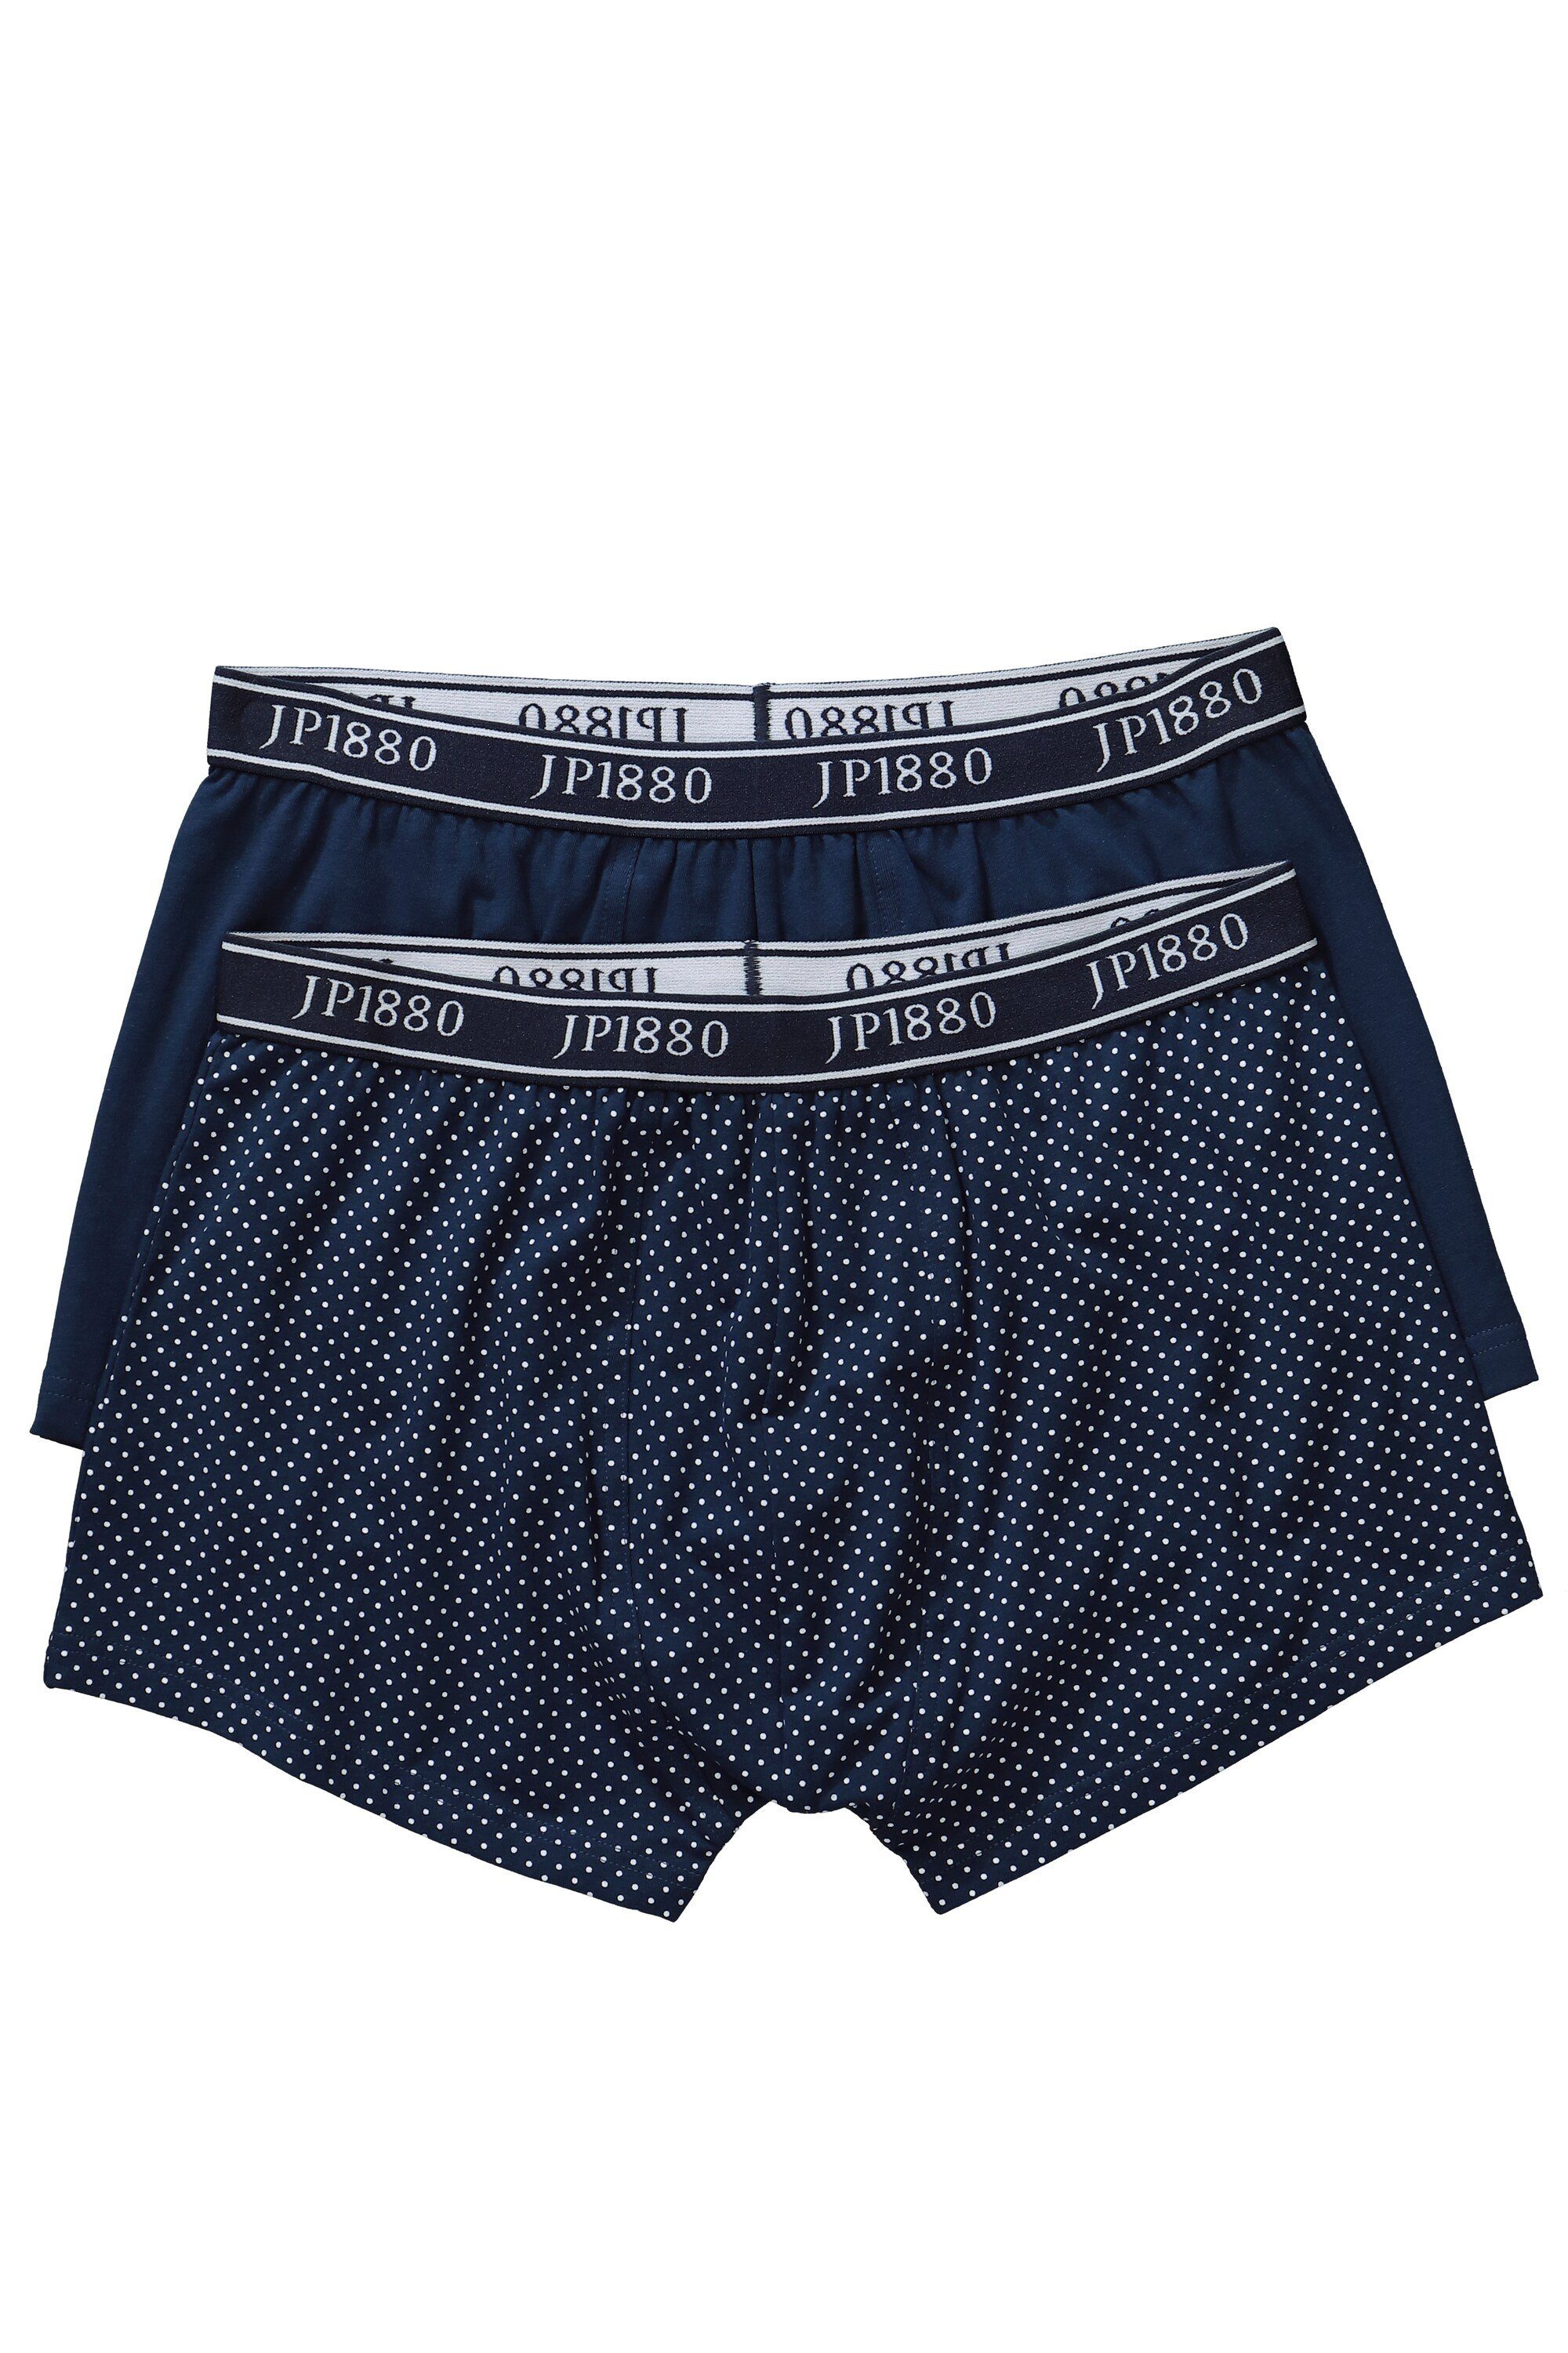 10 XL JP1880 bis Hip-Pants Unterhose 2er-Pack FLEXNAMIC® Boxershorts